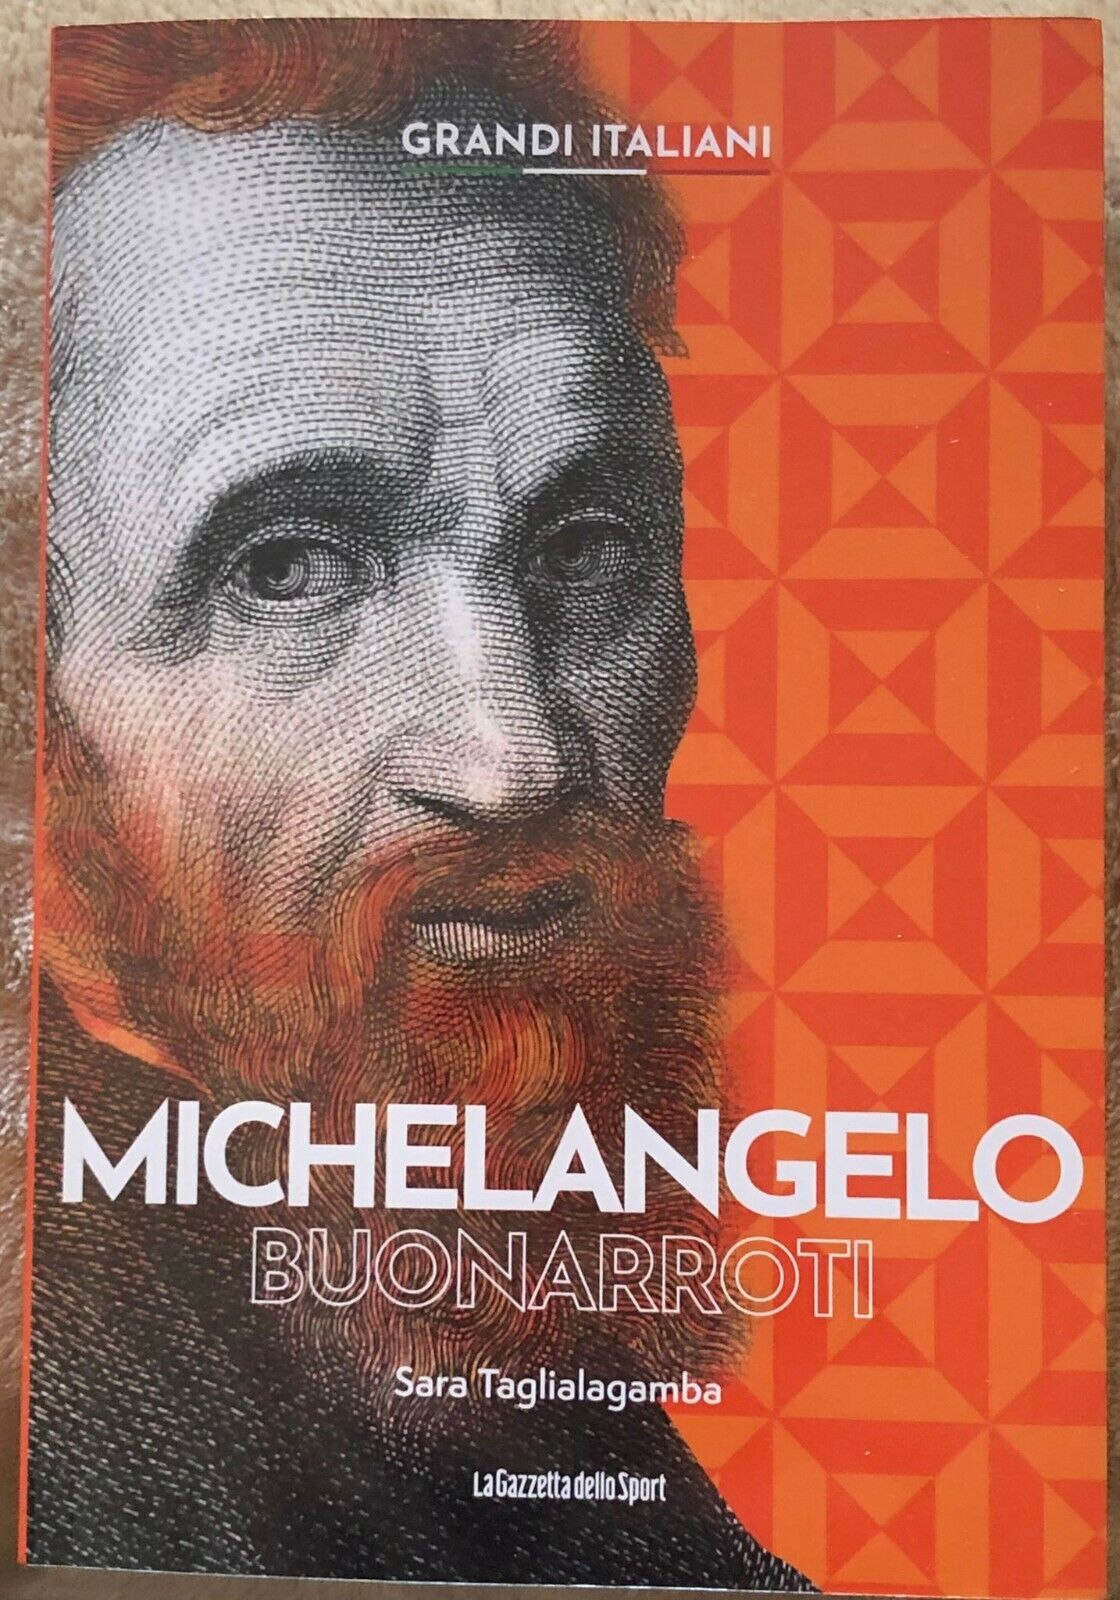 Grandi italiani n. 5 - Michelangelo Buonarroti di Sara Taglialagamba,  2022,  La